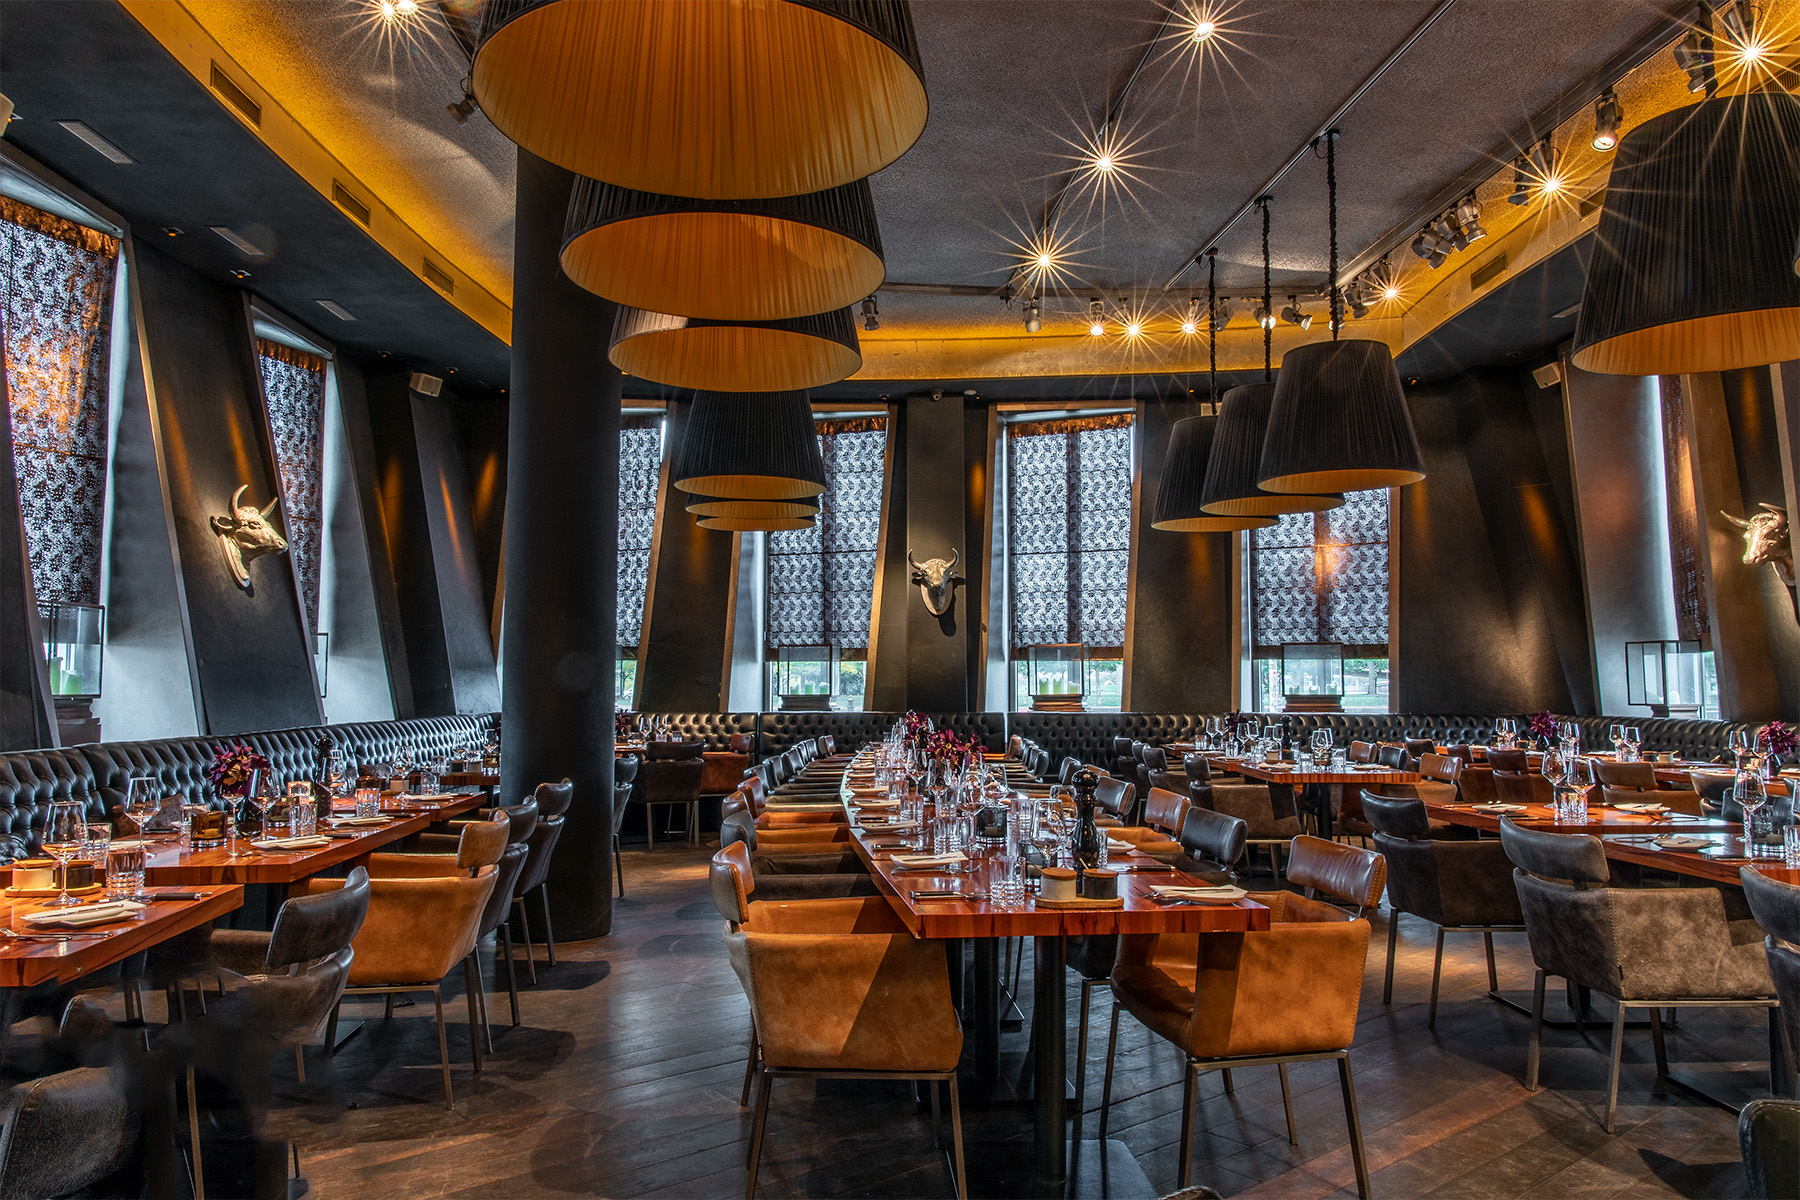 Restaurant Innenbereich, Stühle und gedeckte Tische im Steakhouse und Restaurant Rocca 800°C in Düsseldorf